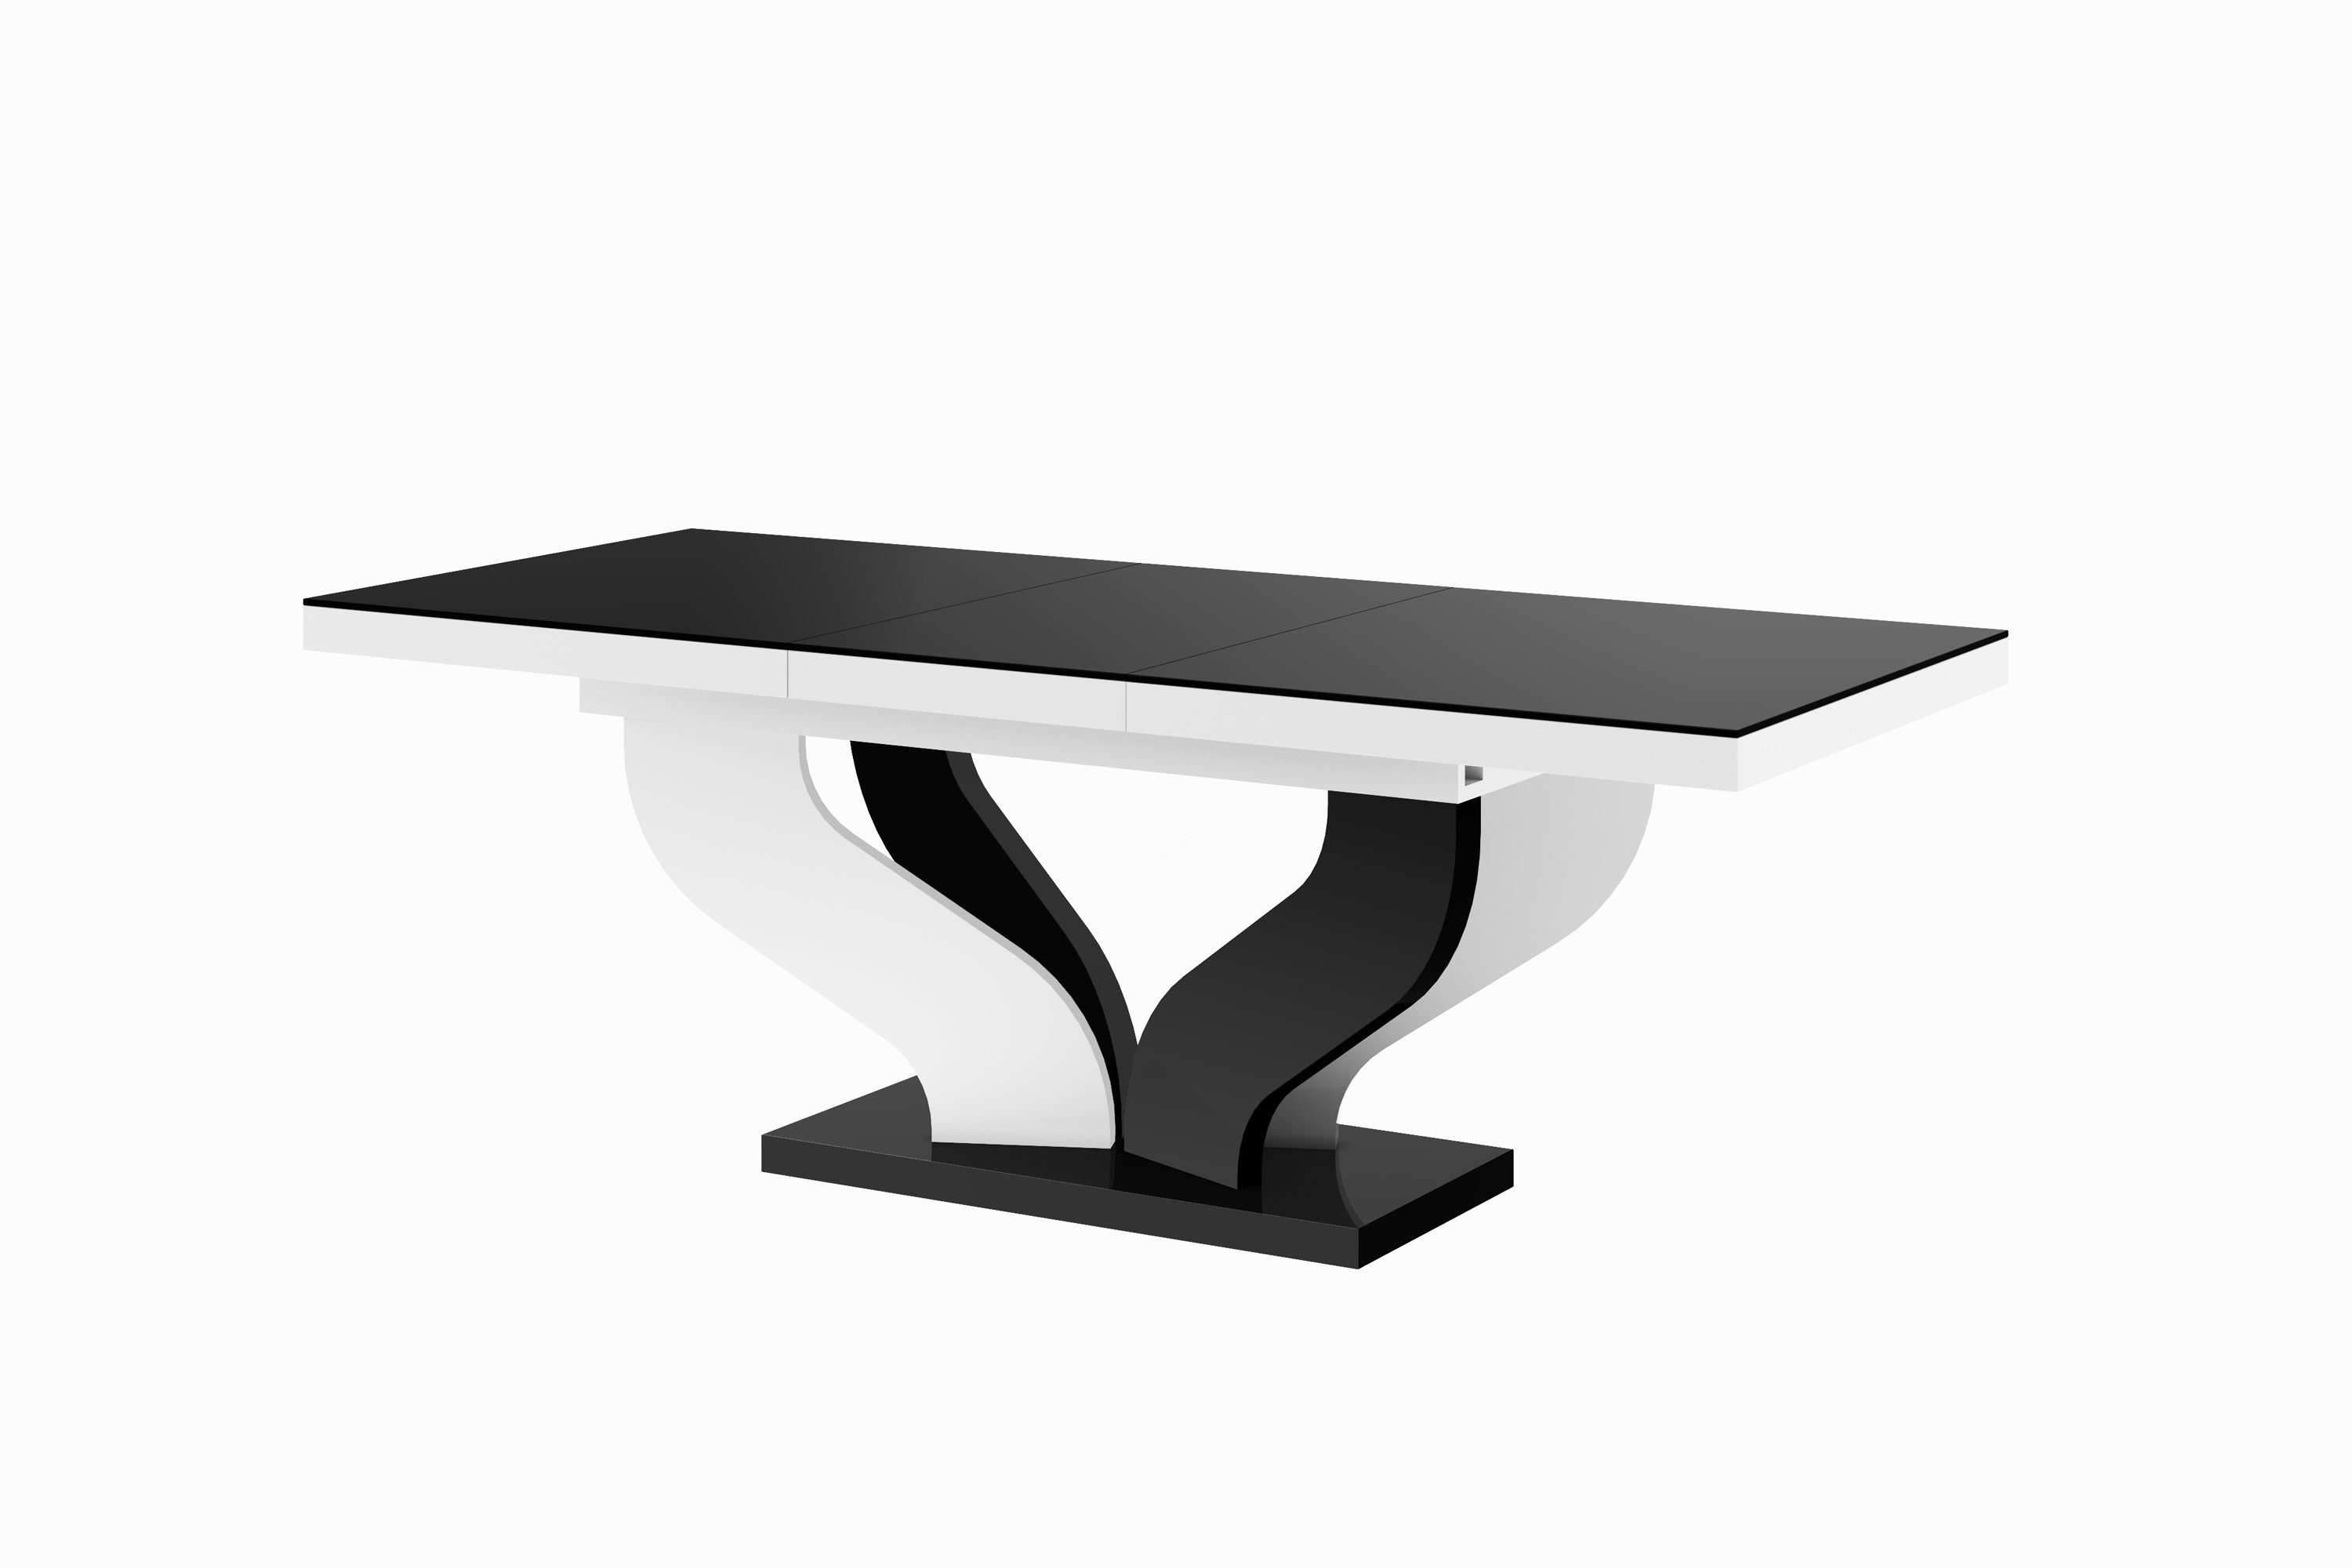 Tisch Hochglanz Hochglanz Hochglanz designimpex ausziehbar HEB-222 Schwarz Weiß Schwarz Weiß Design / / Esstisch 256cm bis 160